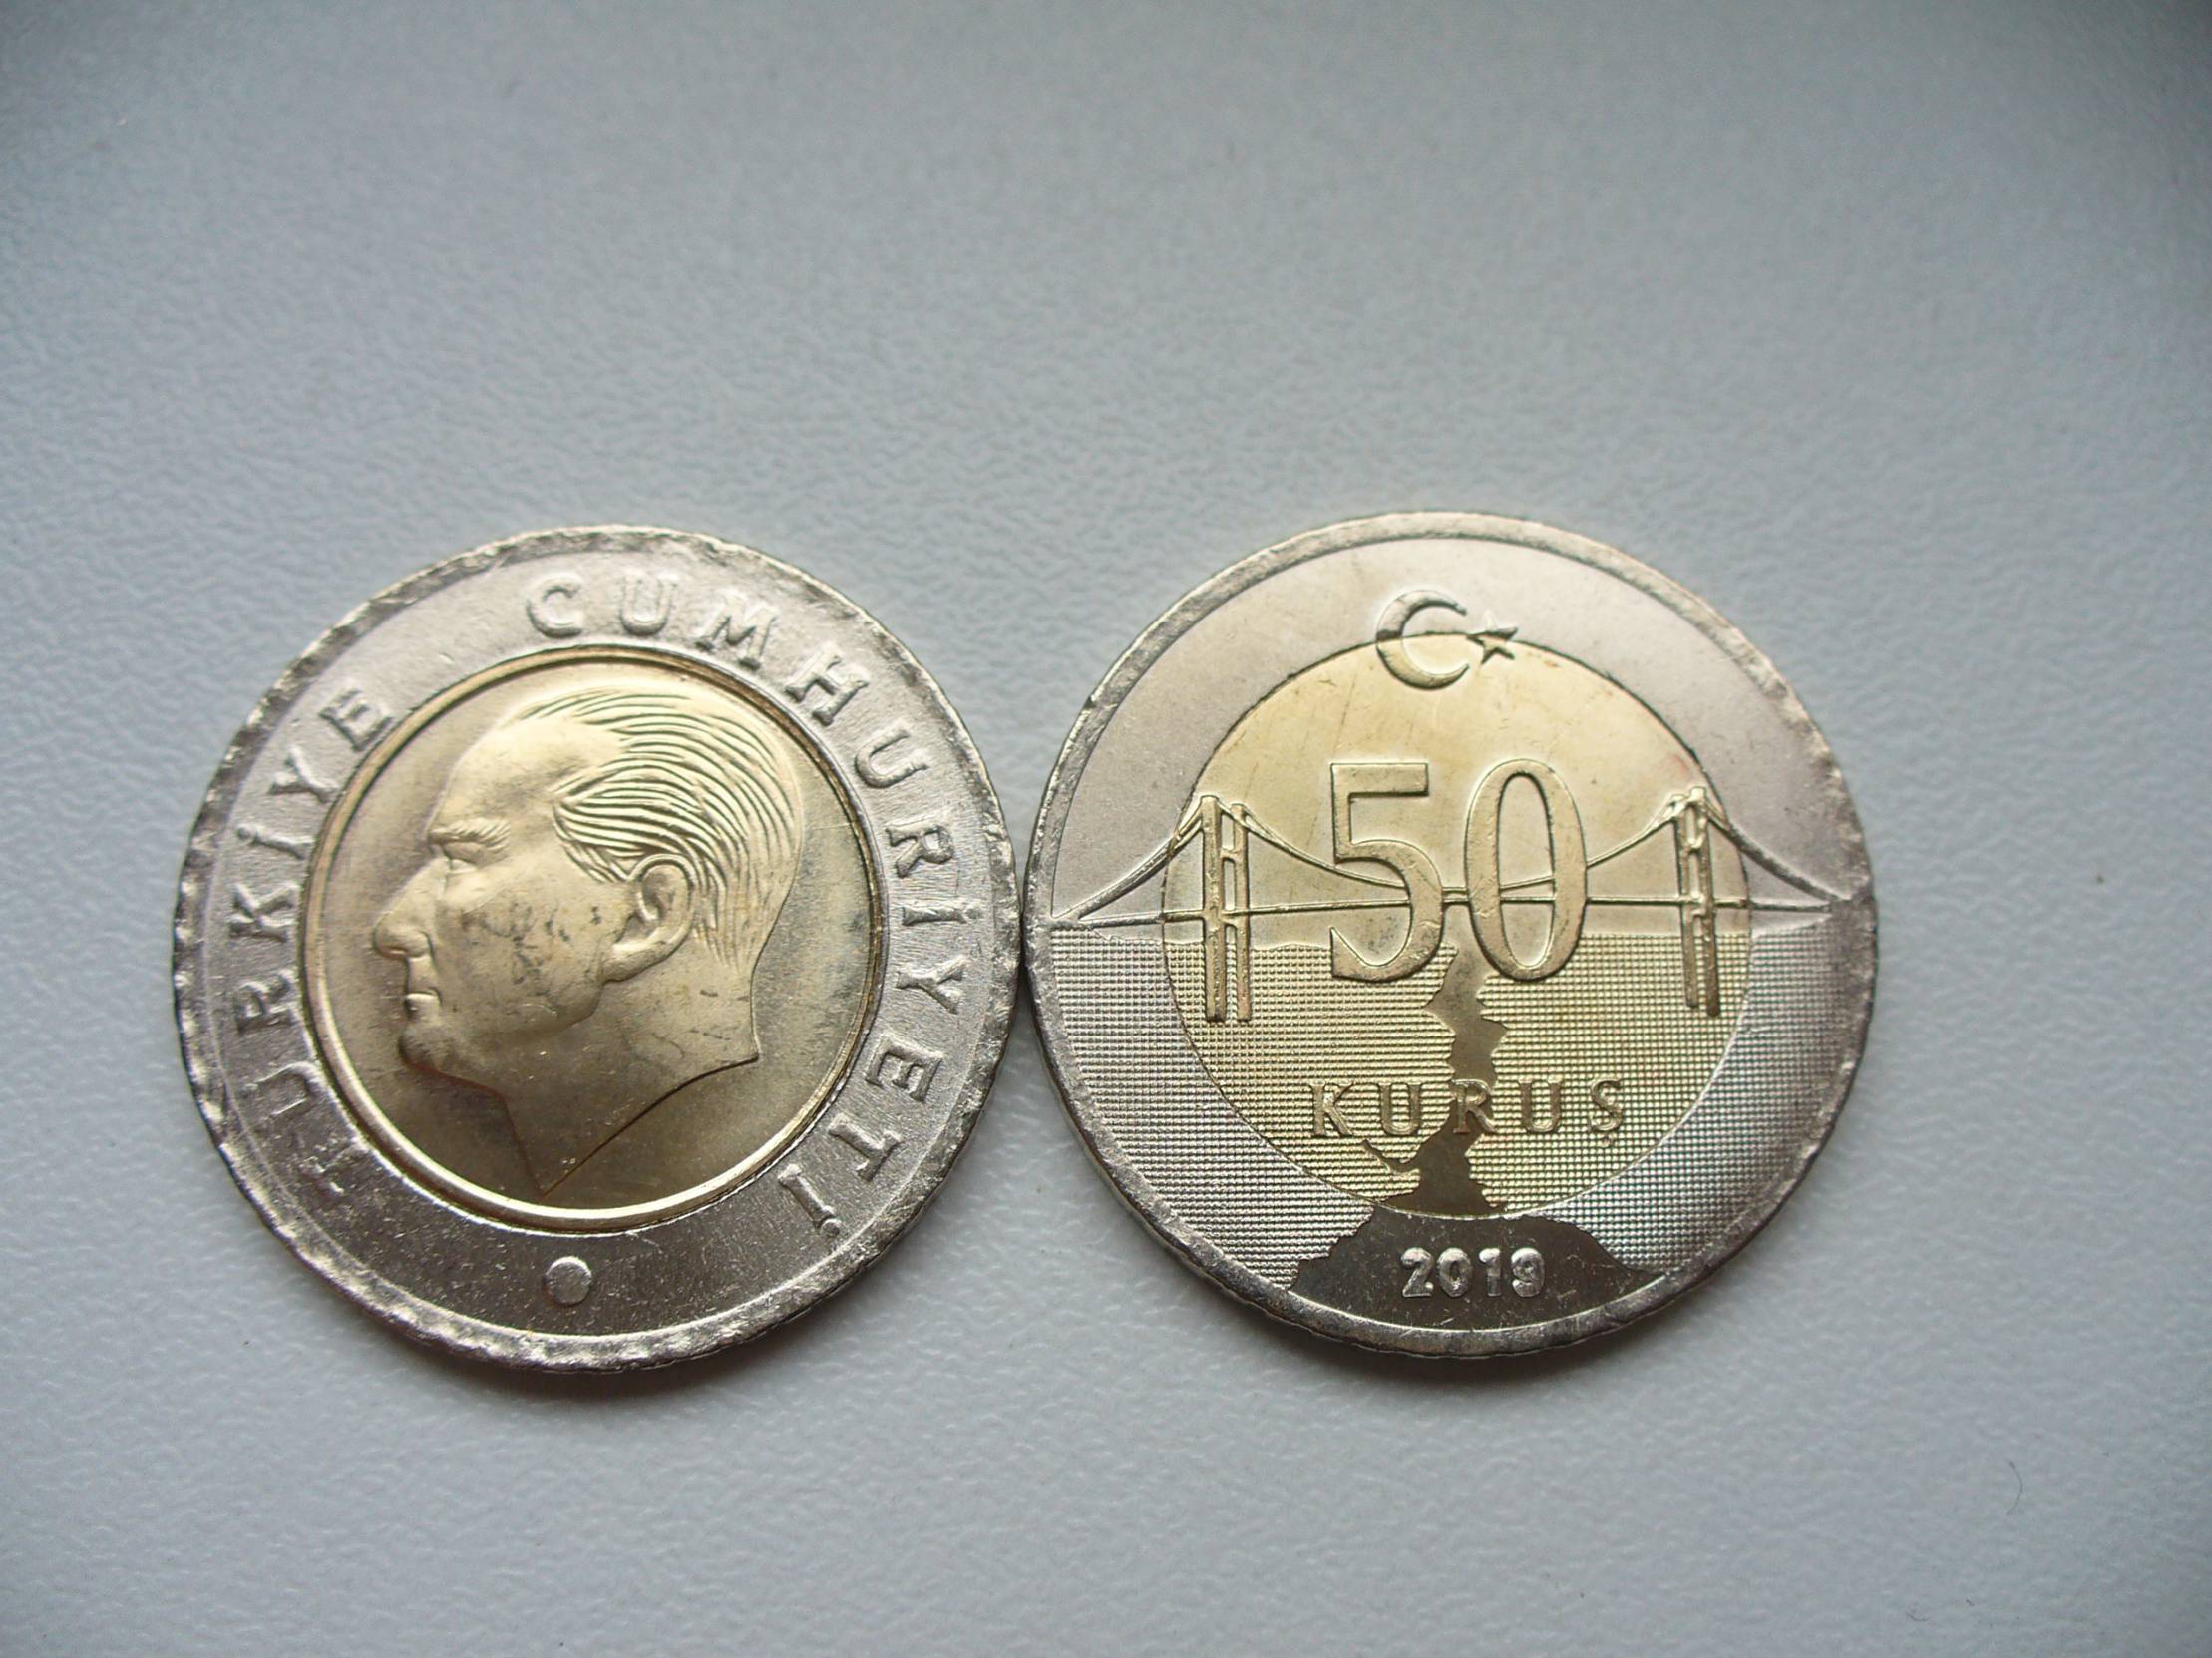 10 16.5 tl. Турция 50 Куруш 2015. Турецкие монеты 50 Курус в рублях. 50 Курус. 50 Kurus в рублях.